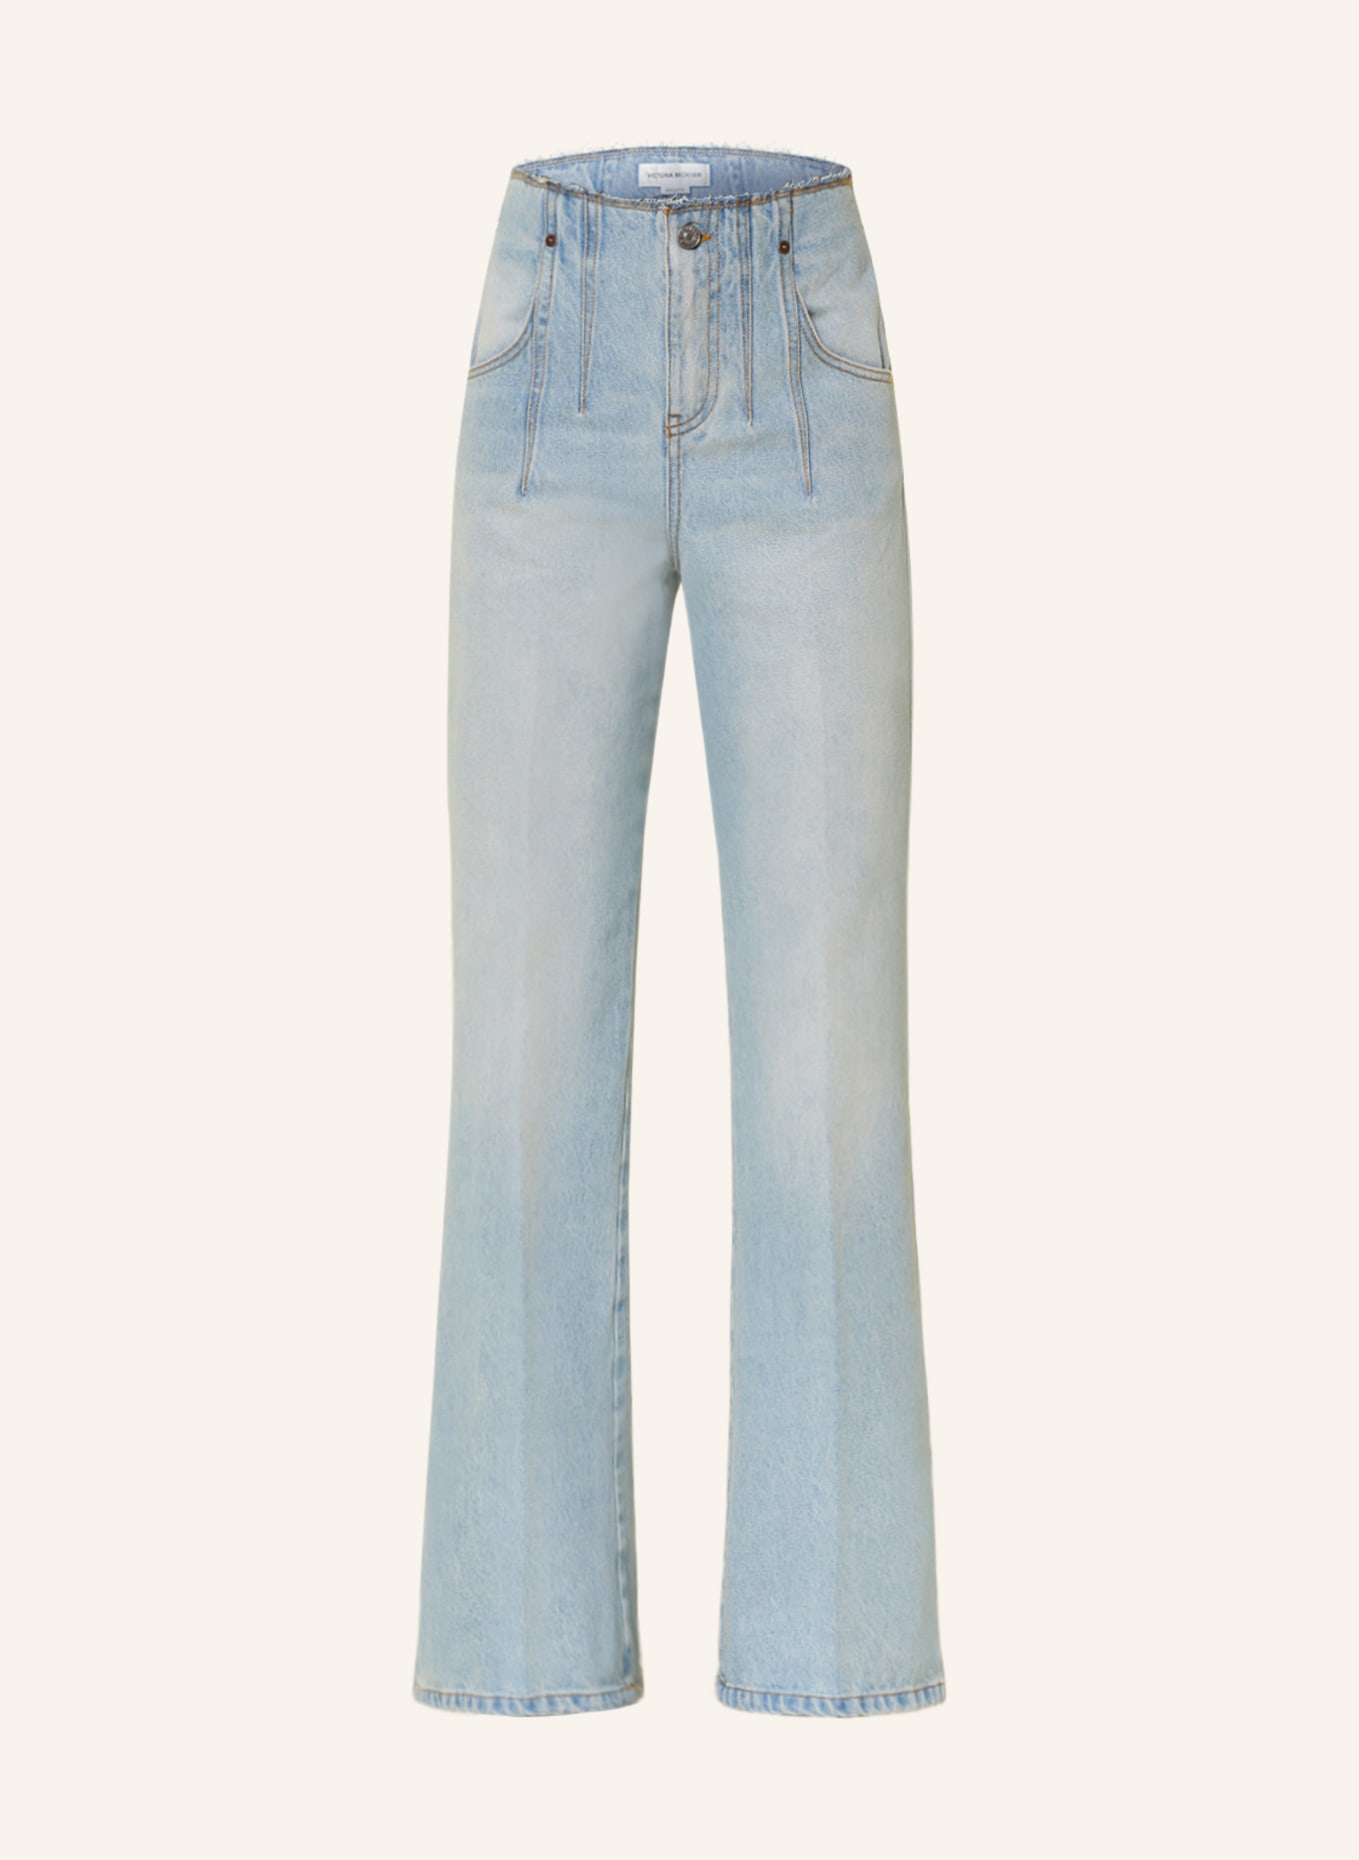 VICTORIABECKHAM Flared jeans, Color: 8439 LIGHT / MID VINTAGE WASH (Image 1)